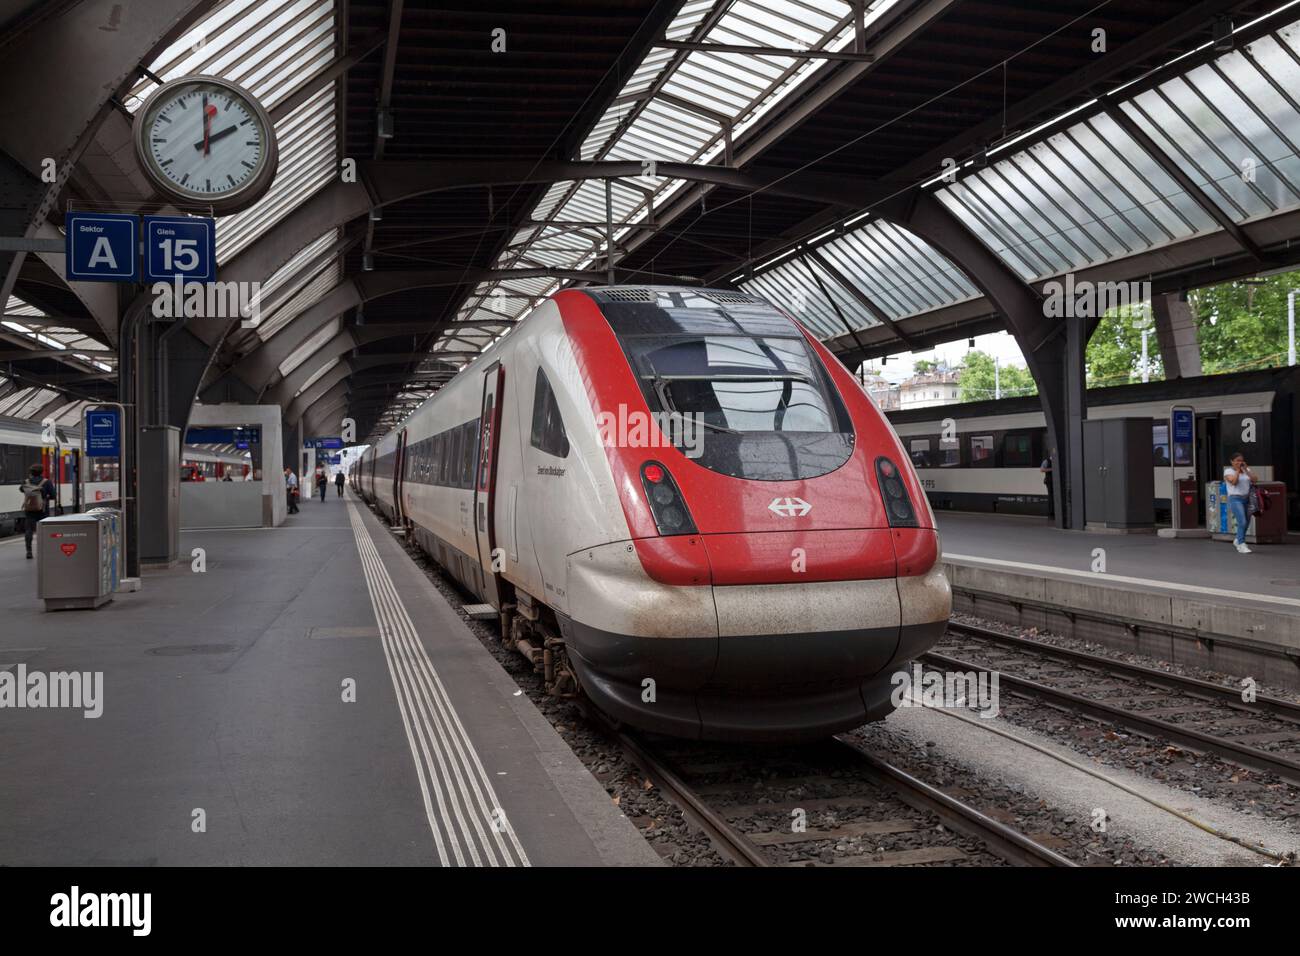 Zurigo, Svizzera - 13 giugno 2018: Il treno RABDe 500 operato dalle Ferrovie federali svizzere nella stazione ferroviaria di Zürich HB. Foto Stock